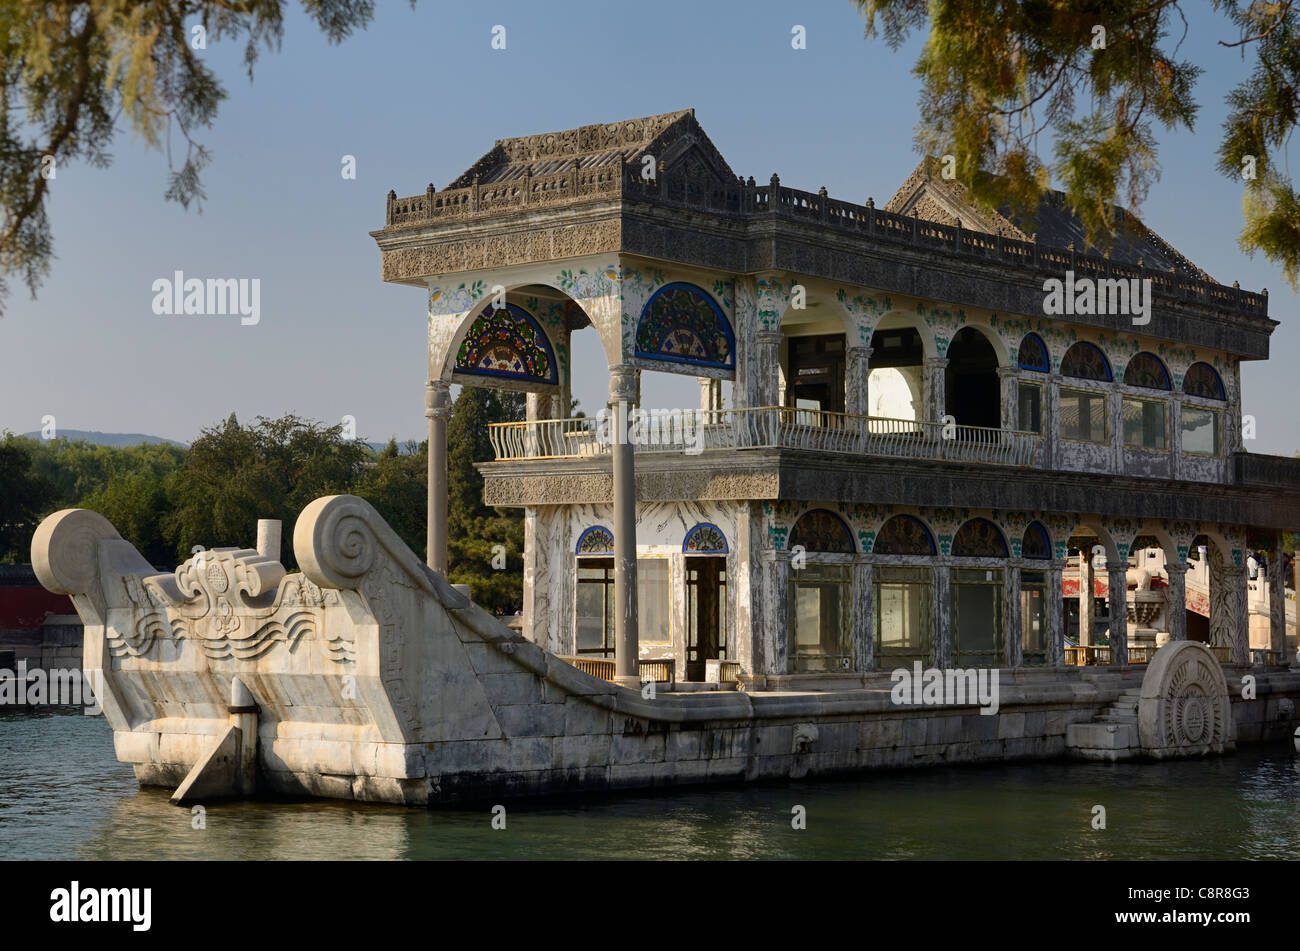 Chiara e pacifica in marmo o in barca sul lago kunming al Summer Palace beijing cina Foto Stock